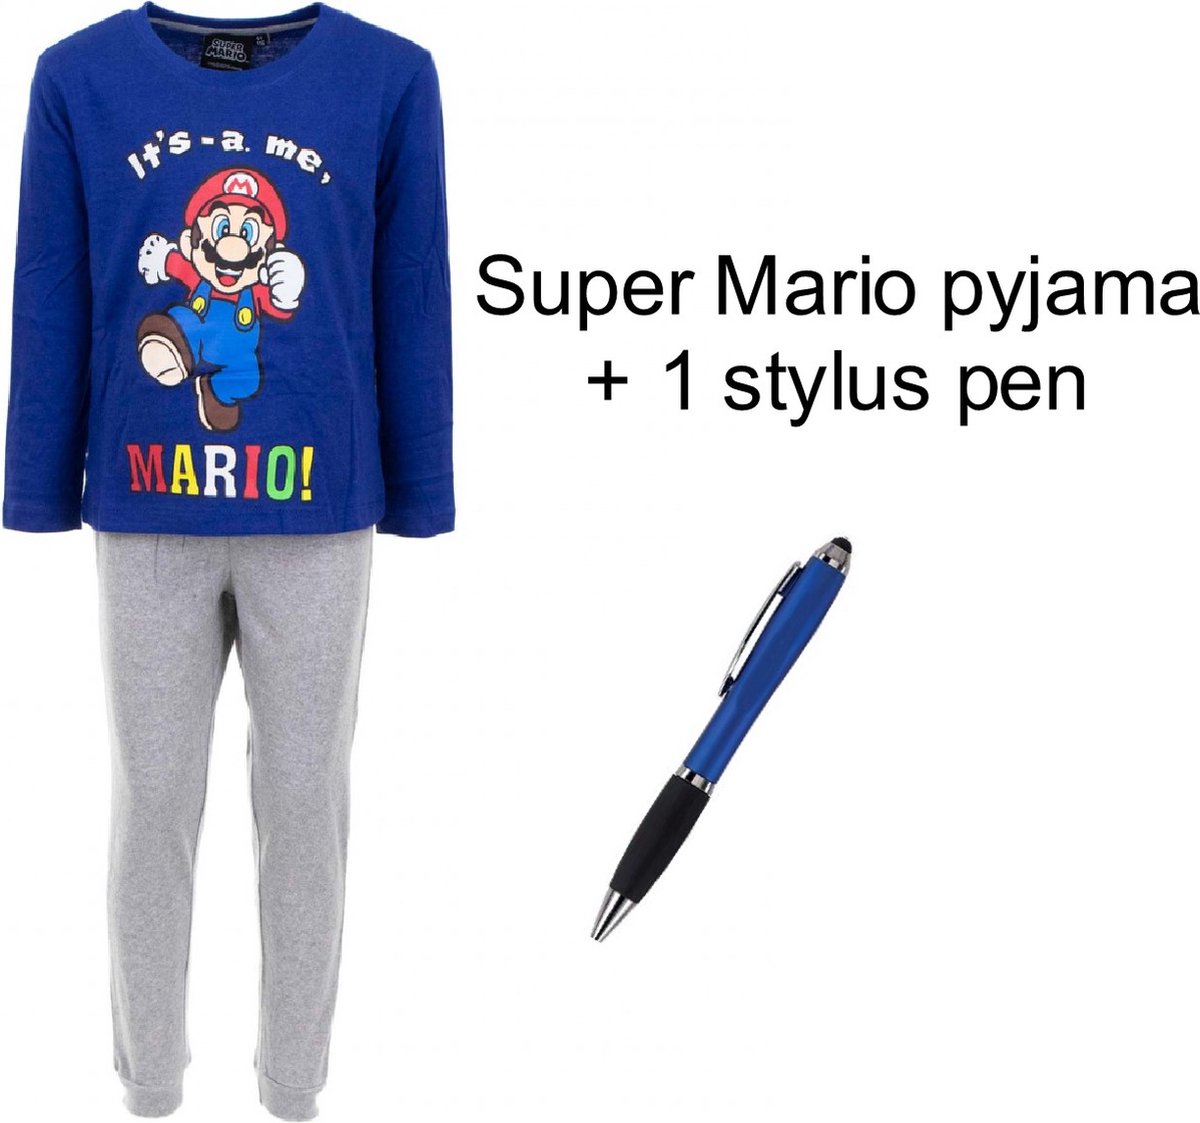 Super Mario Bross Pyjama - Donkerblauw / Mele grijs. Maat 104 cm / 4 jaar + EXTRA 1 Stylus Pen.